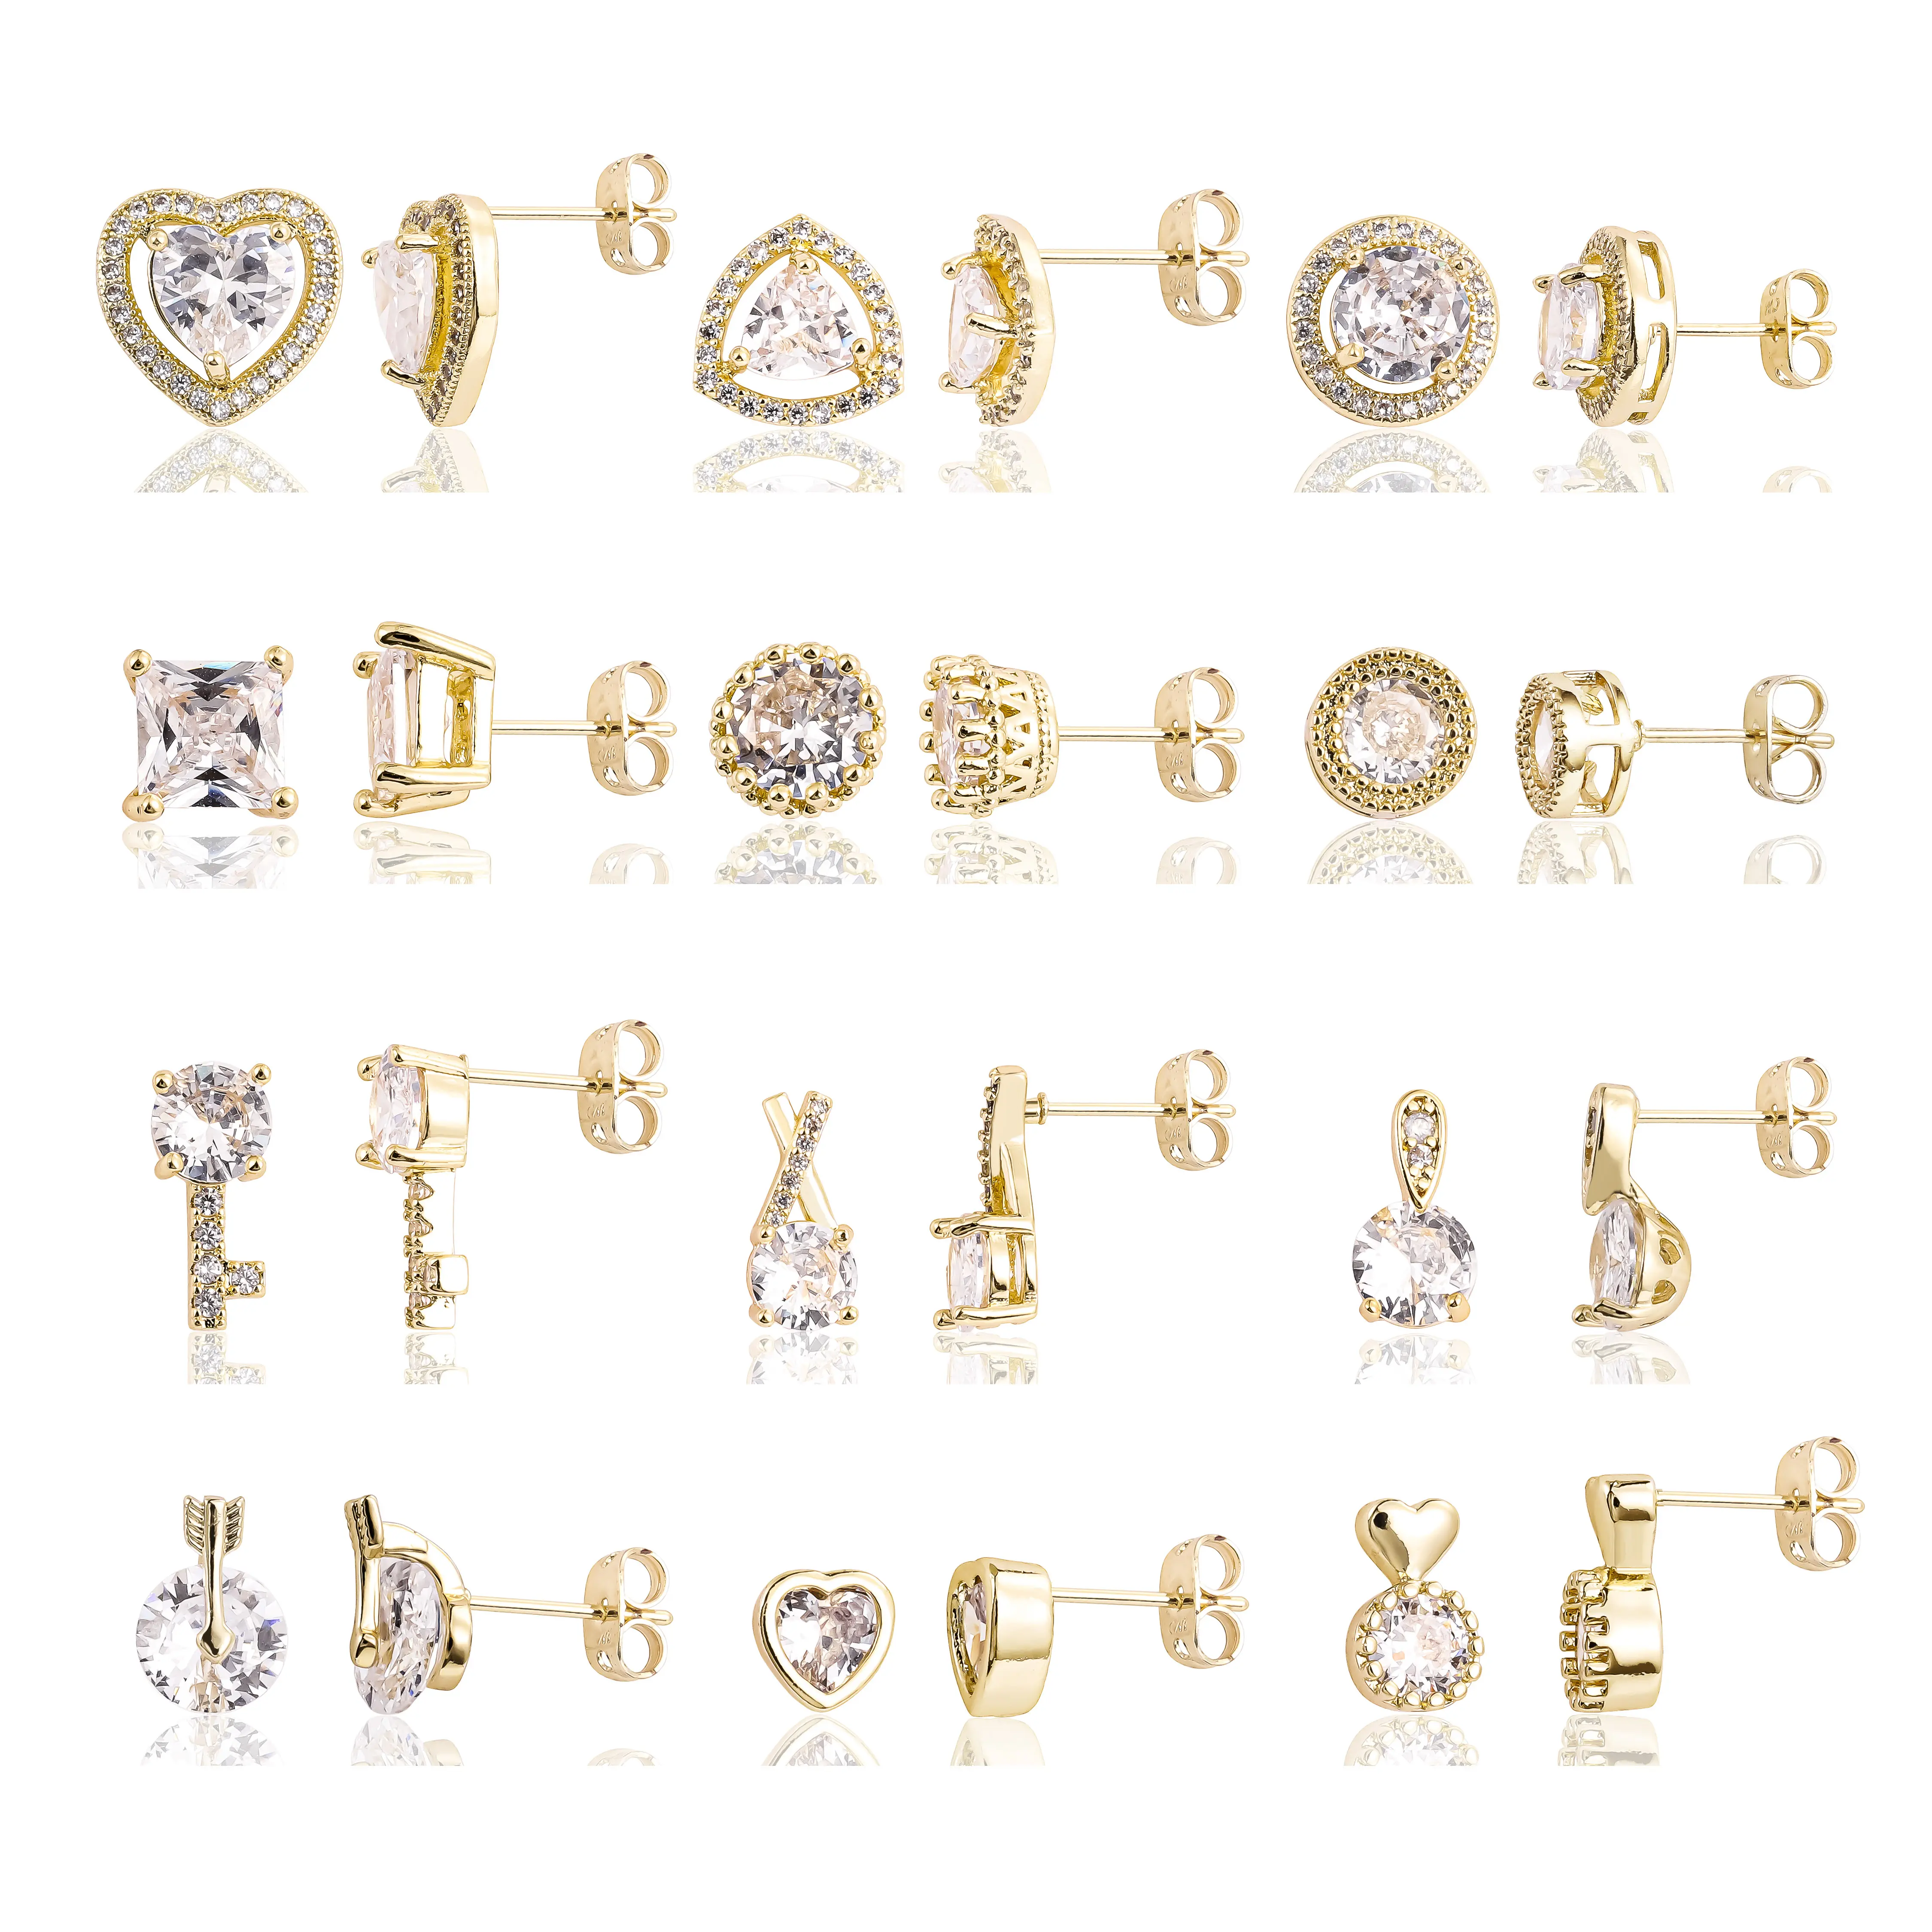 New oro laminado pendientes aretes de mujer 14K gold plated zirconia fine jewelry earring women lady hoops studs drop earring